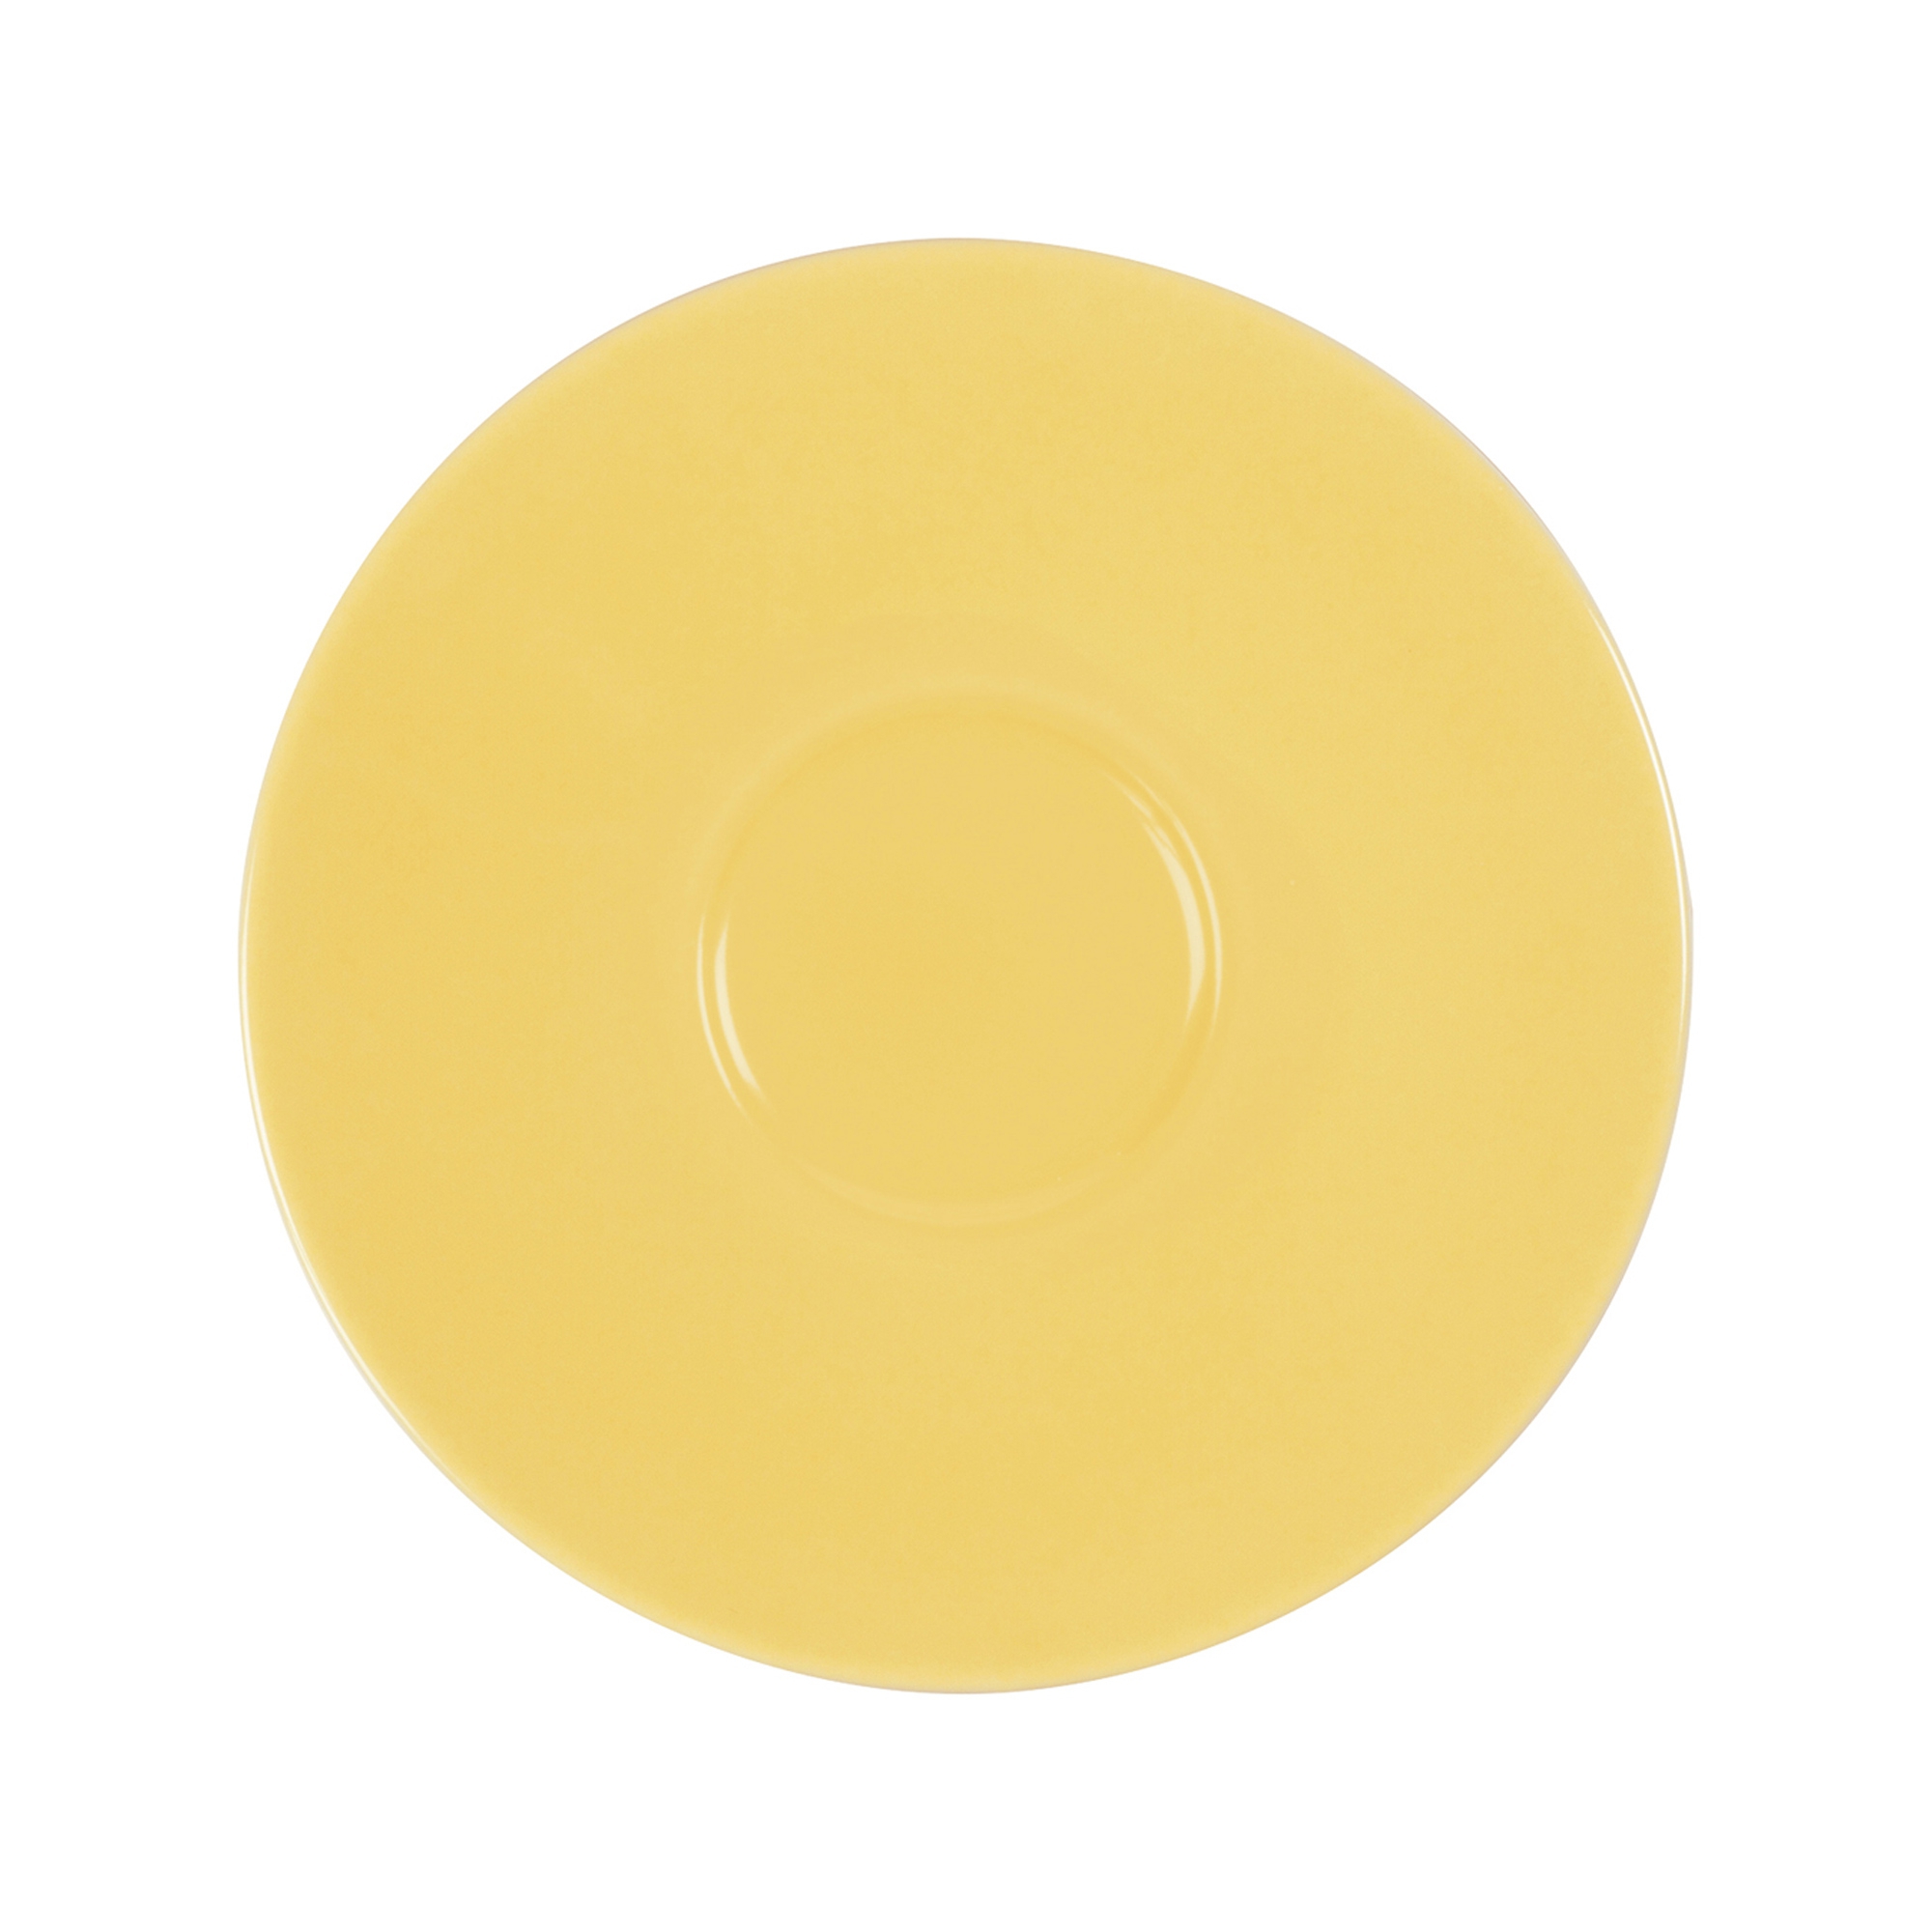 Eschenbach - saucer 14.5 cm - light yellow